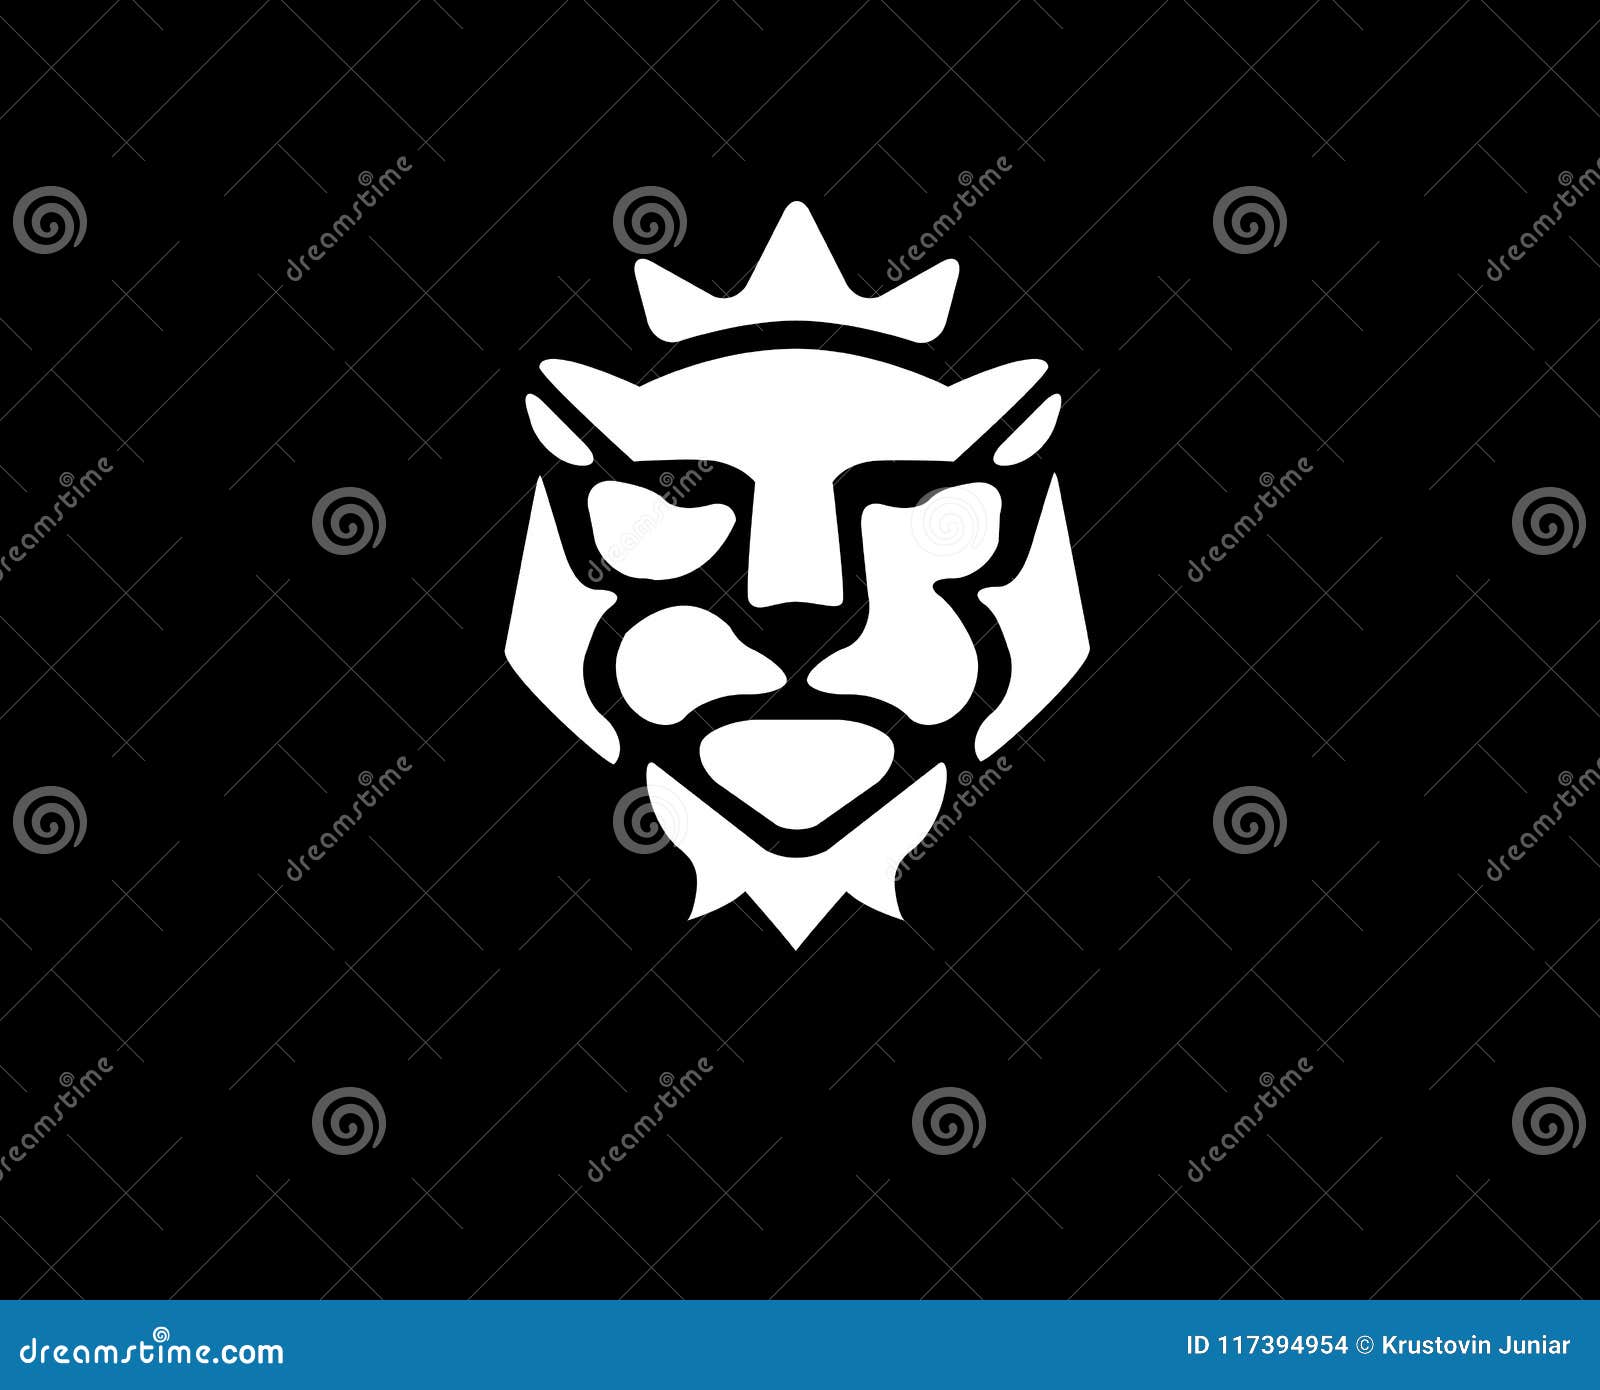 lion kings head logo in black background